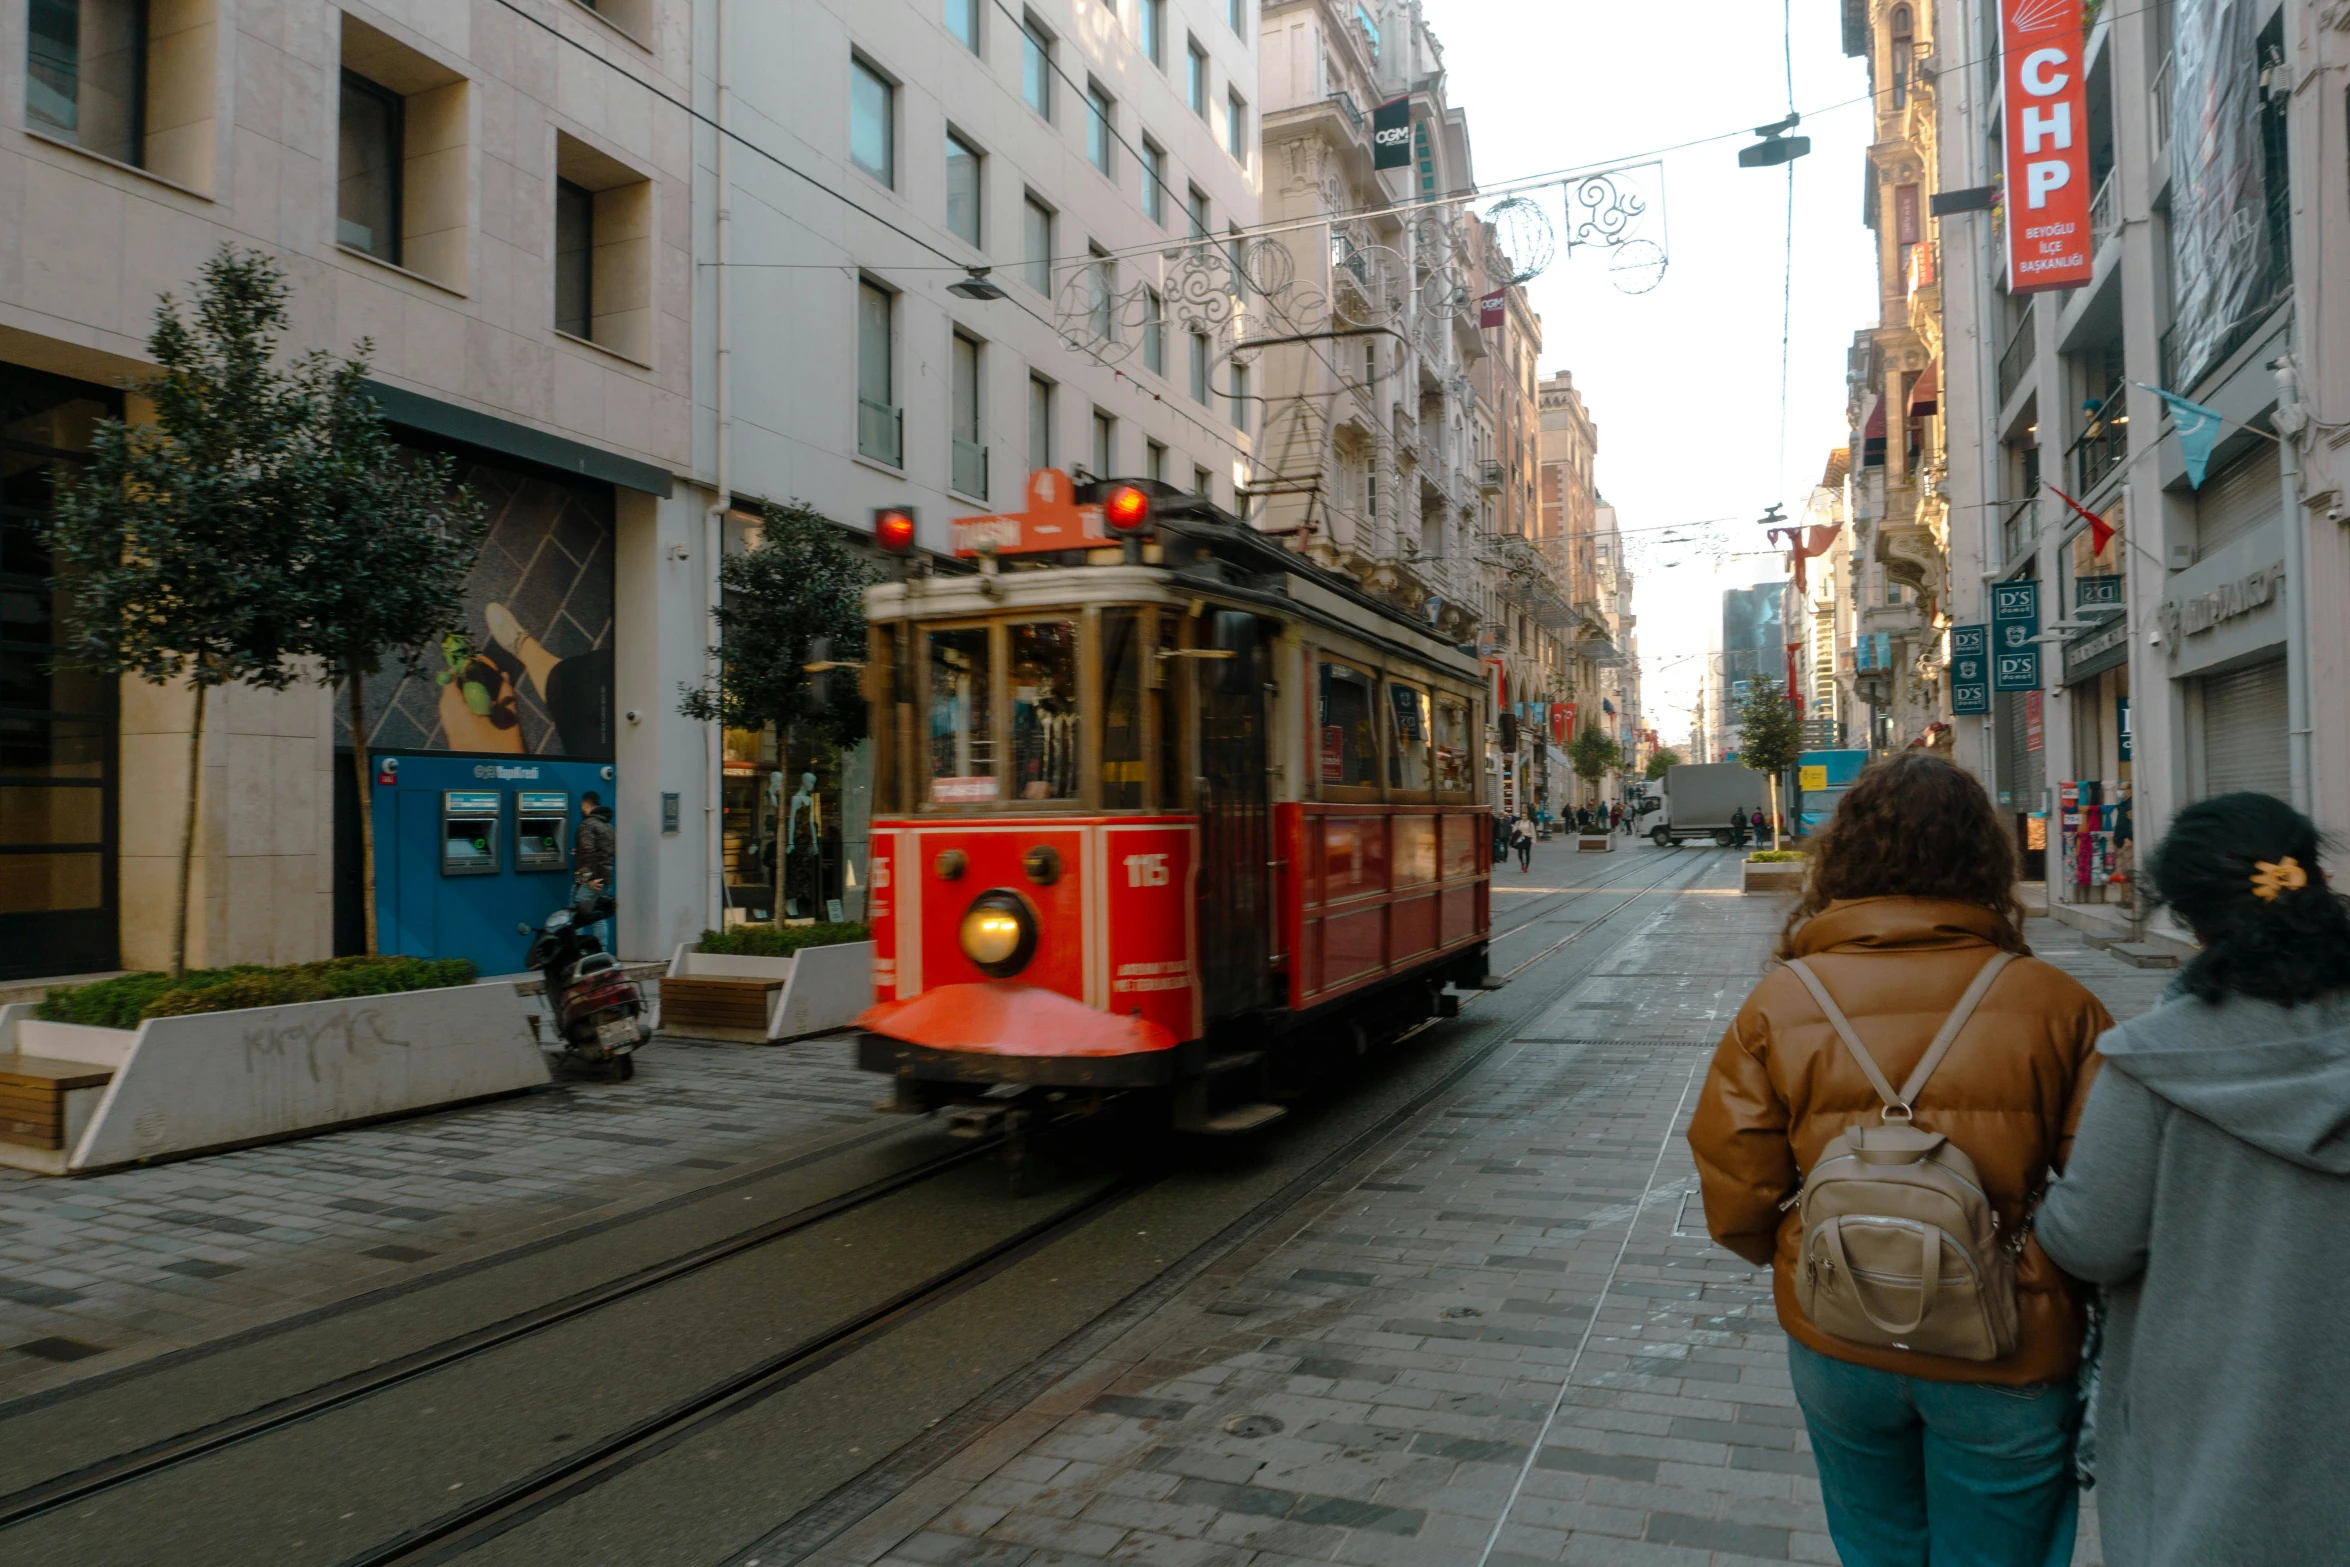 two people walking near a trolley on a street